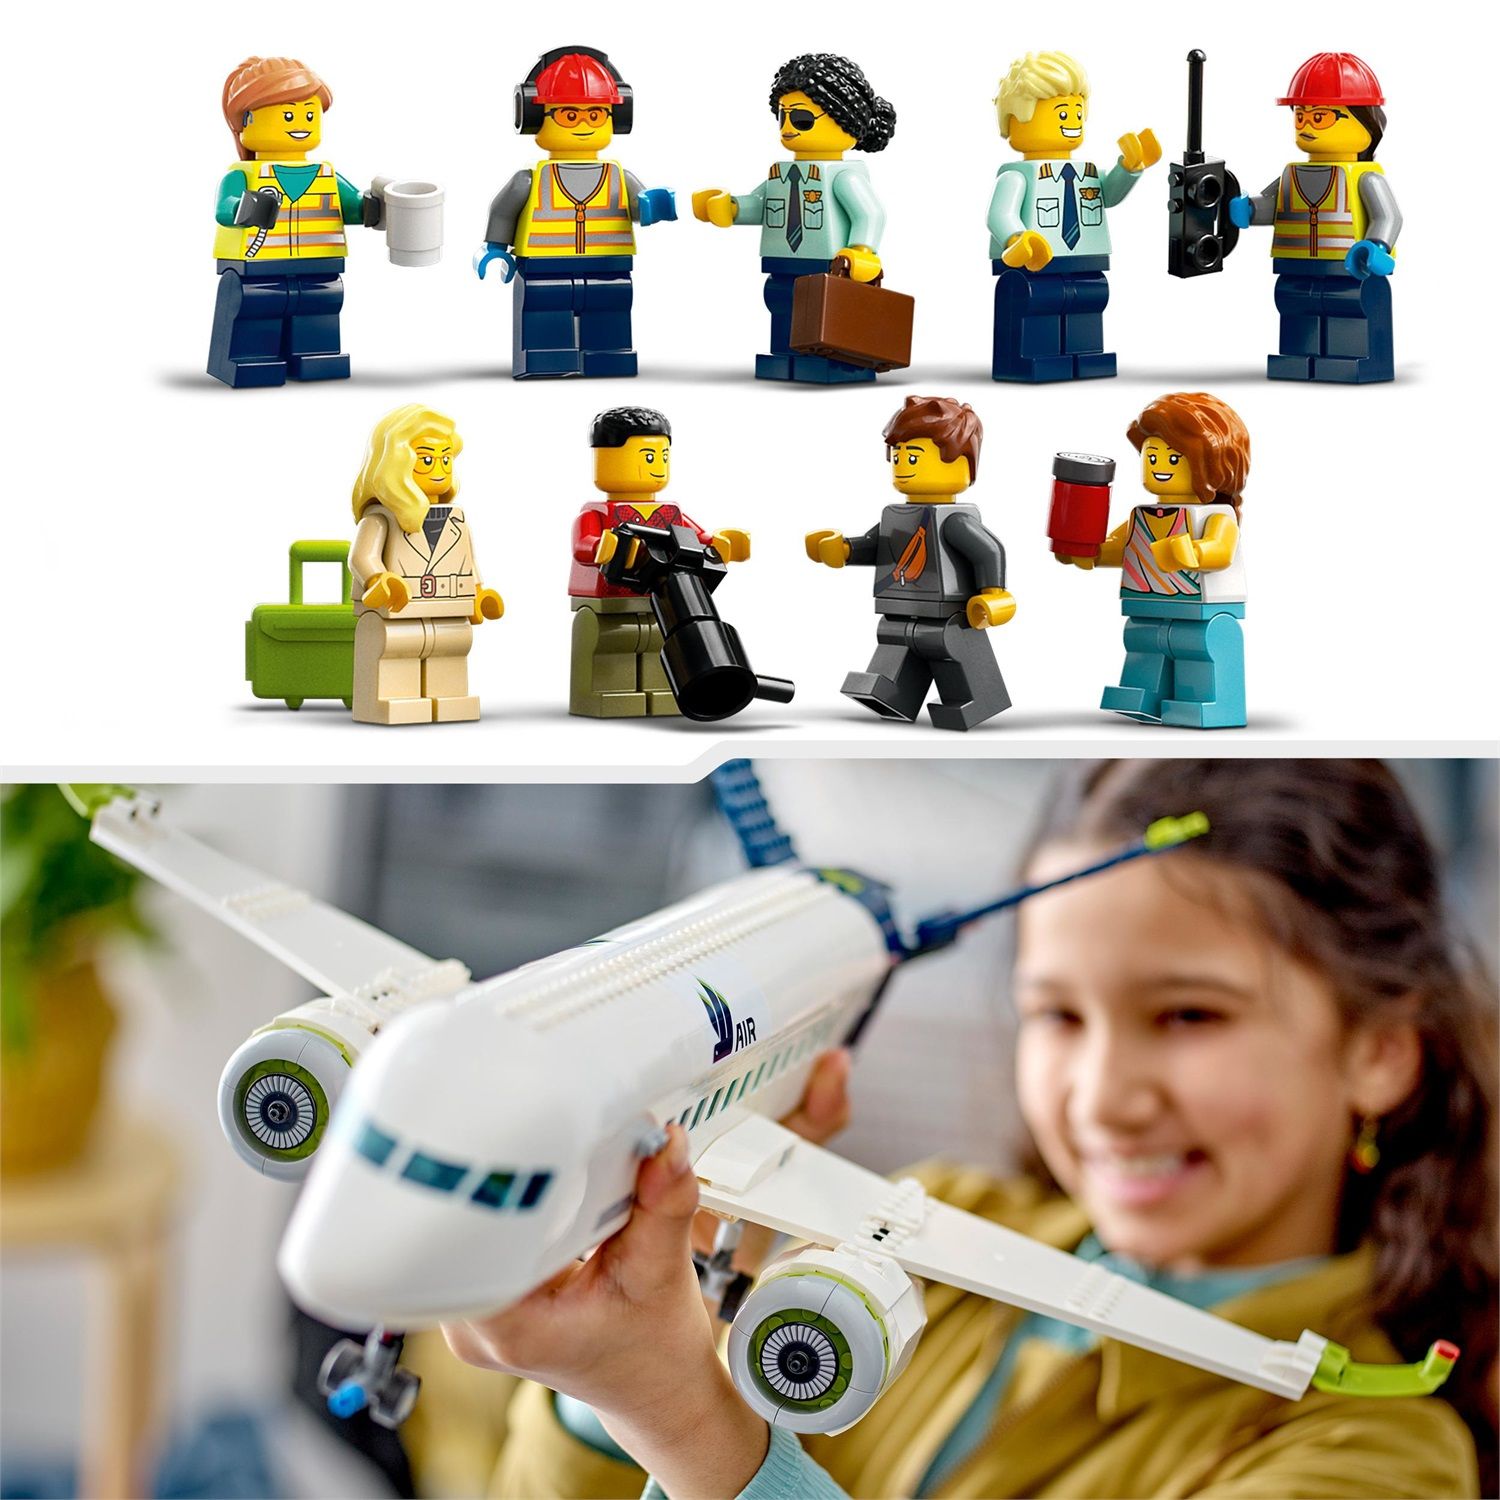 LEGO City 60367 Aereo Passeggeri, Modellino di Aeroplano Giocattolo da  Costruire con 9 Minifigure e Veicoli dell'Aeroporto